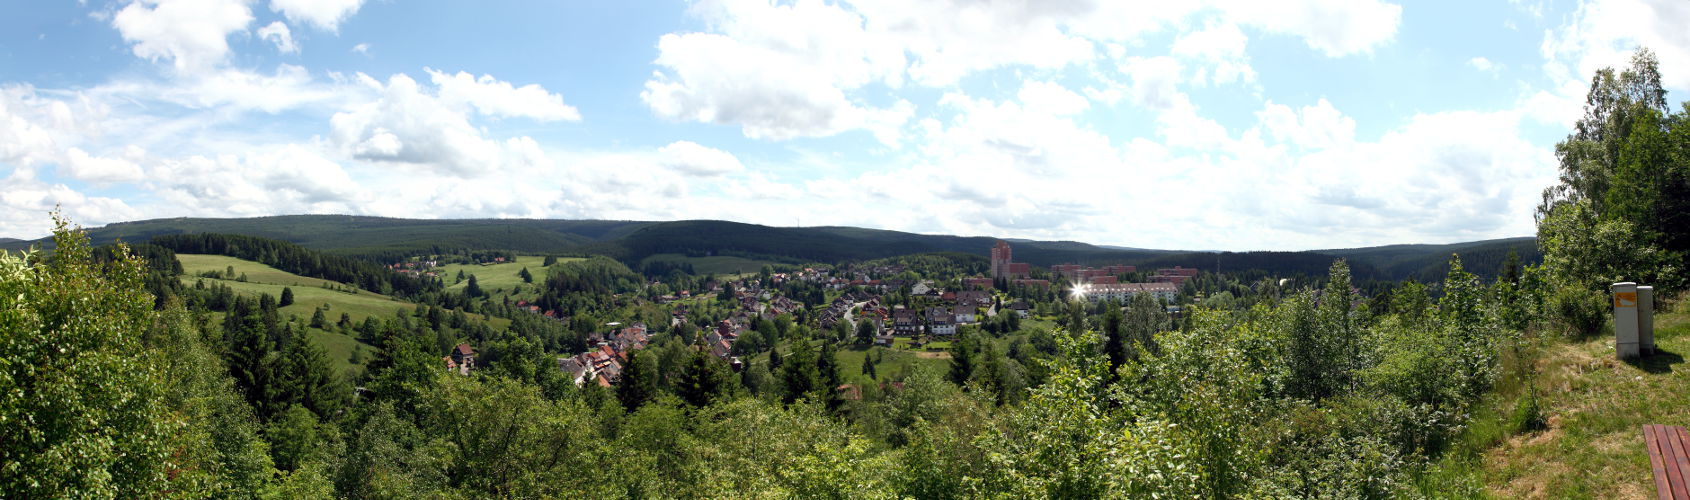 Harzpanorama - Altenau - Sommerurlaub 2013